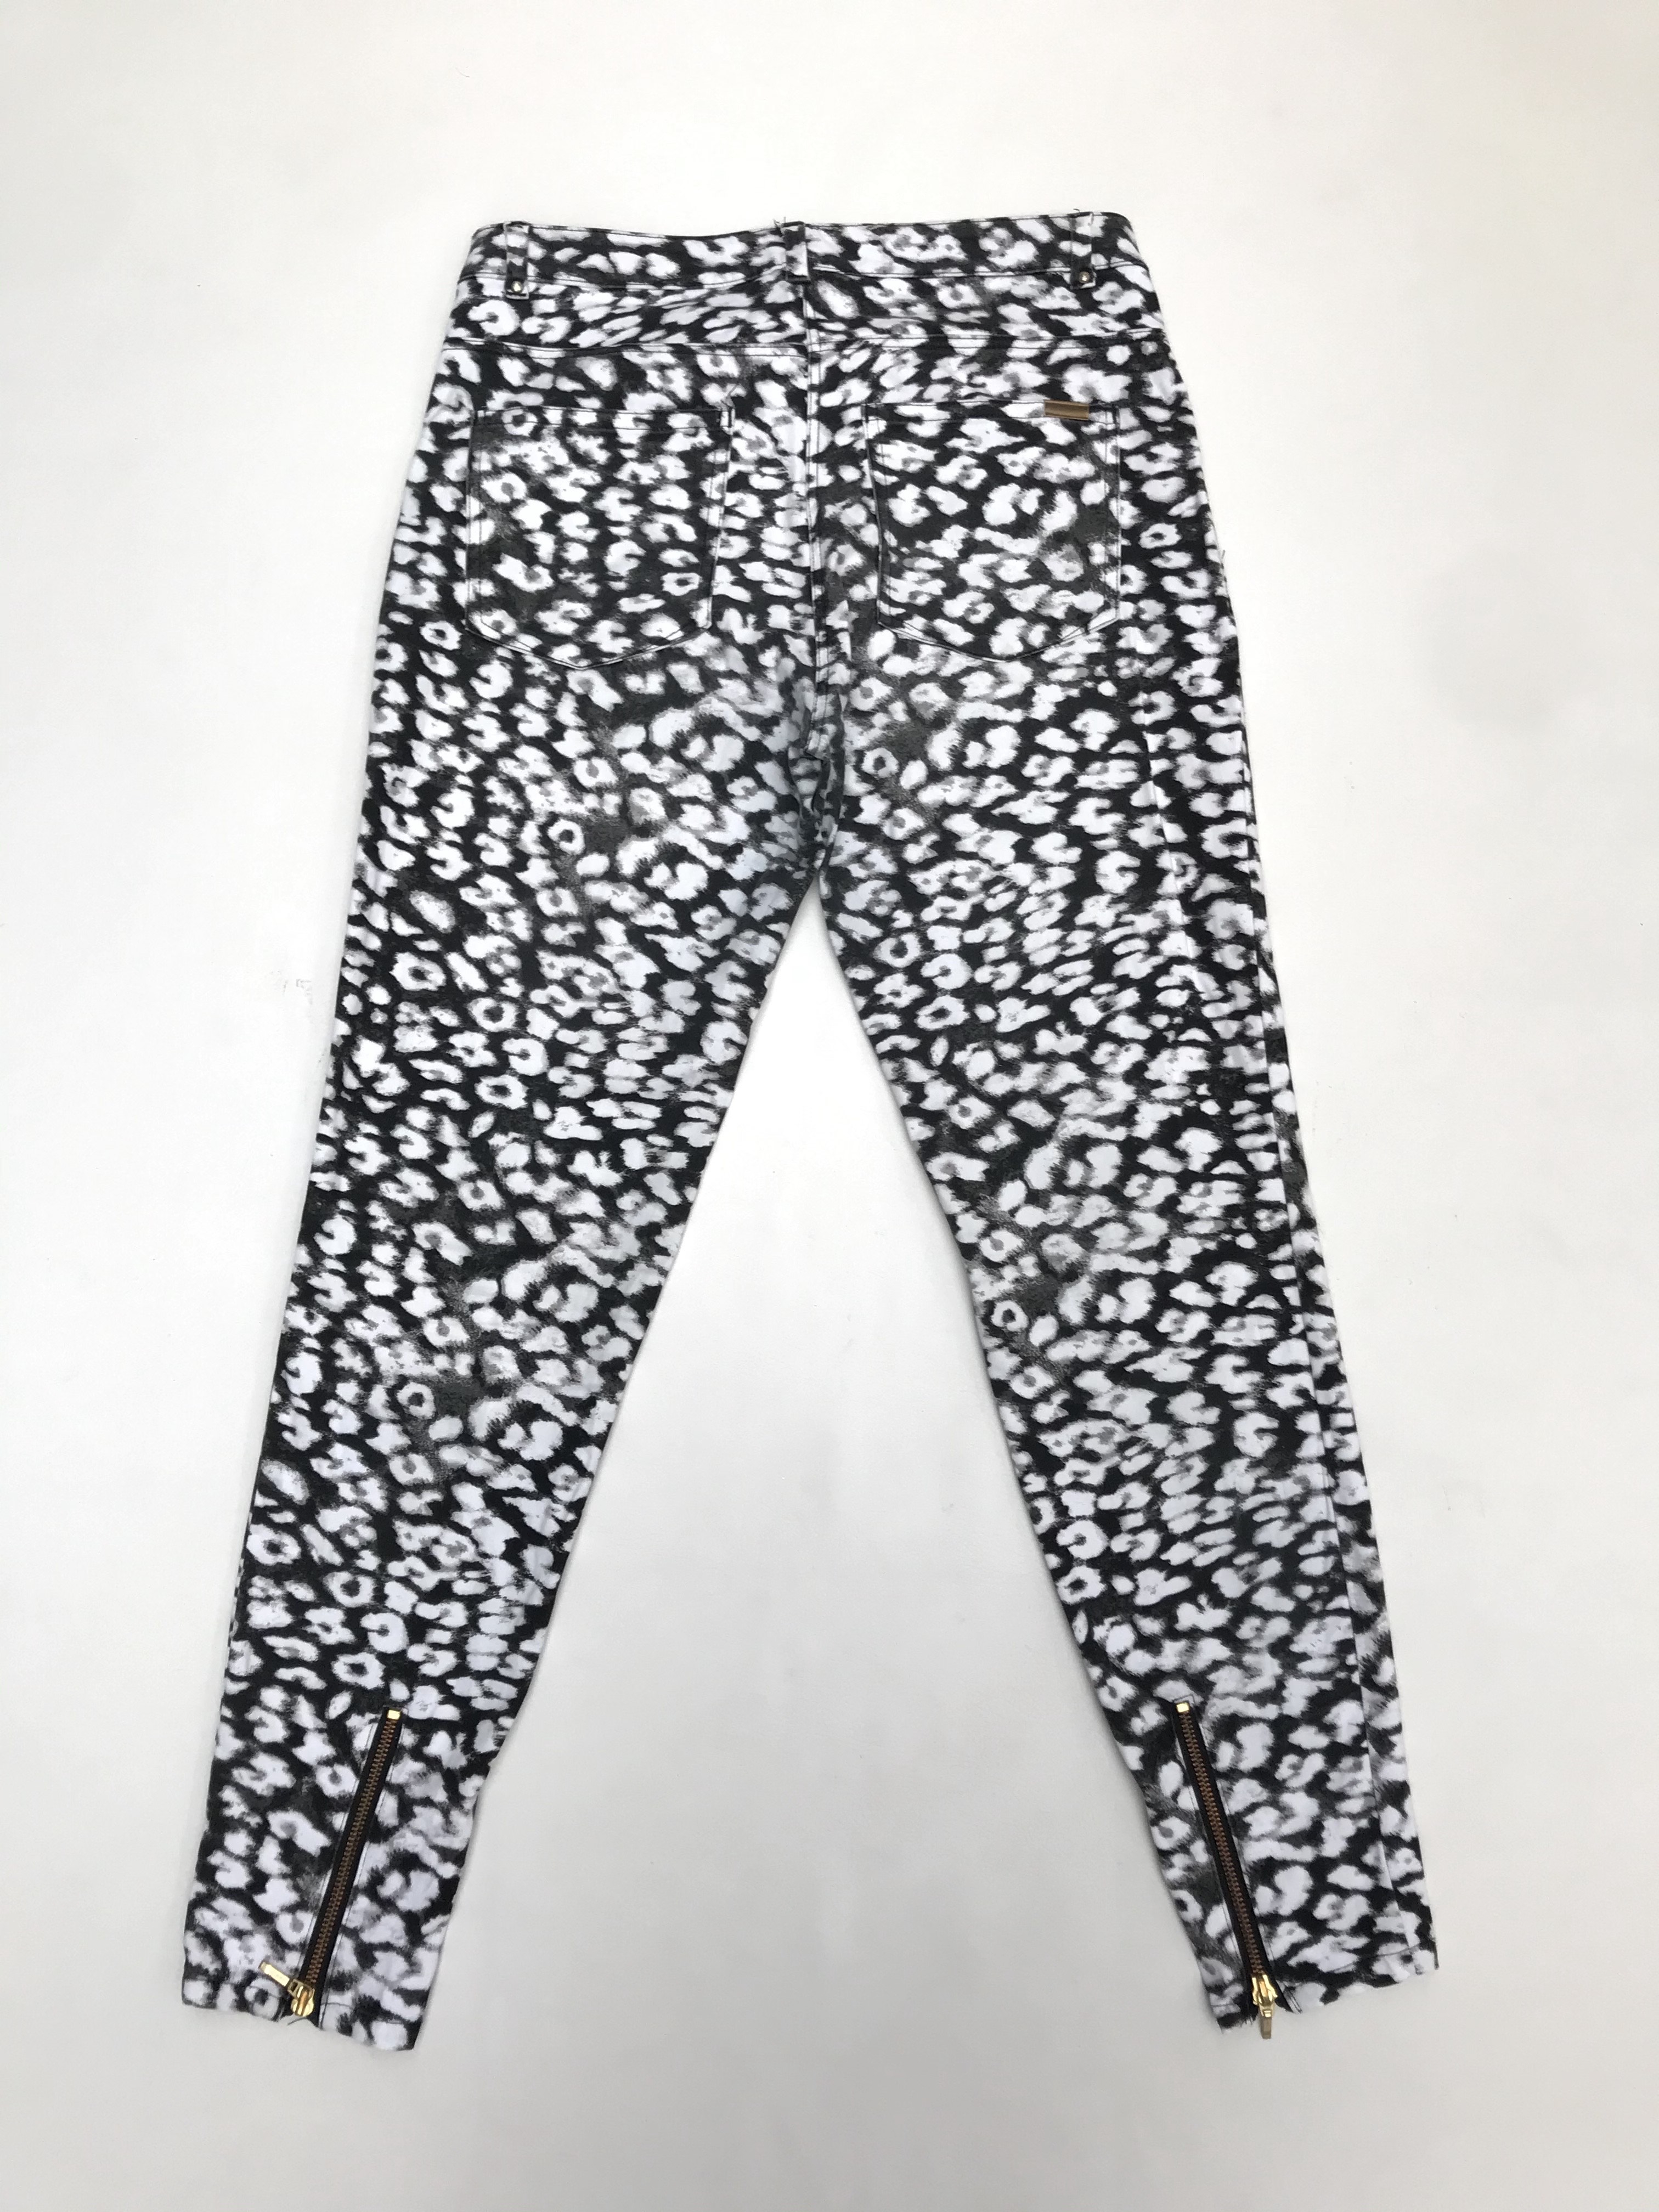 Pantalón H&M estampado animal print blanco y gris, 98% algodón, 5 bolsillos, corte pitillo con cierres en la basta